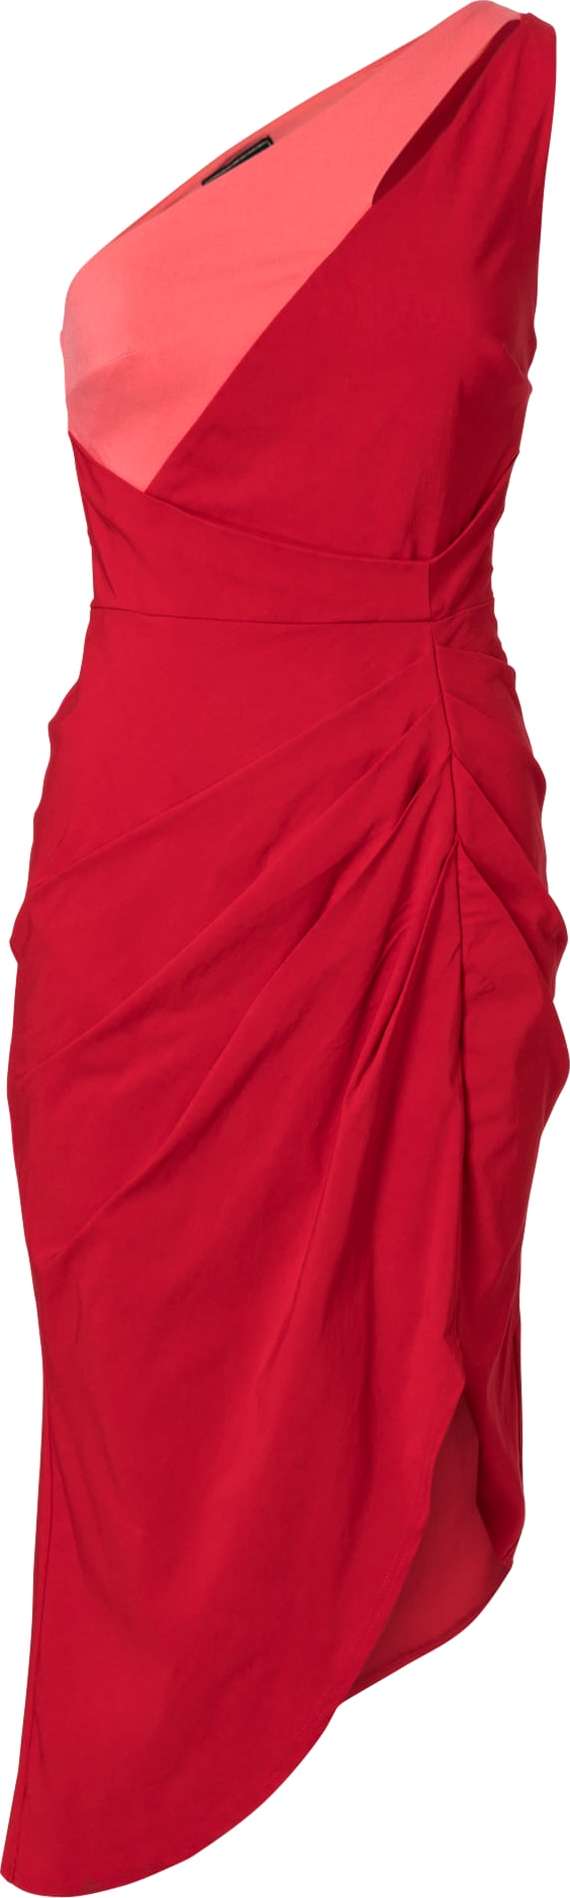 Lipsy Koktejlové šaty svítivě růžová / červená